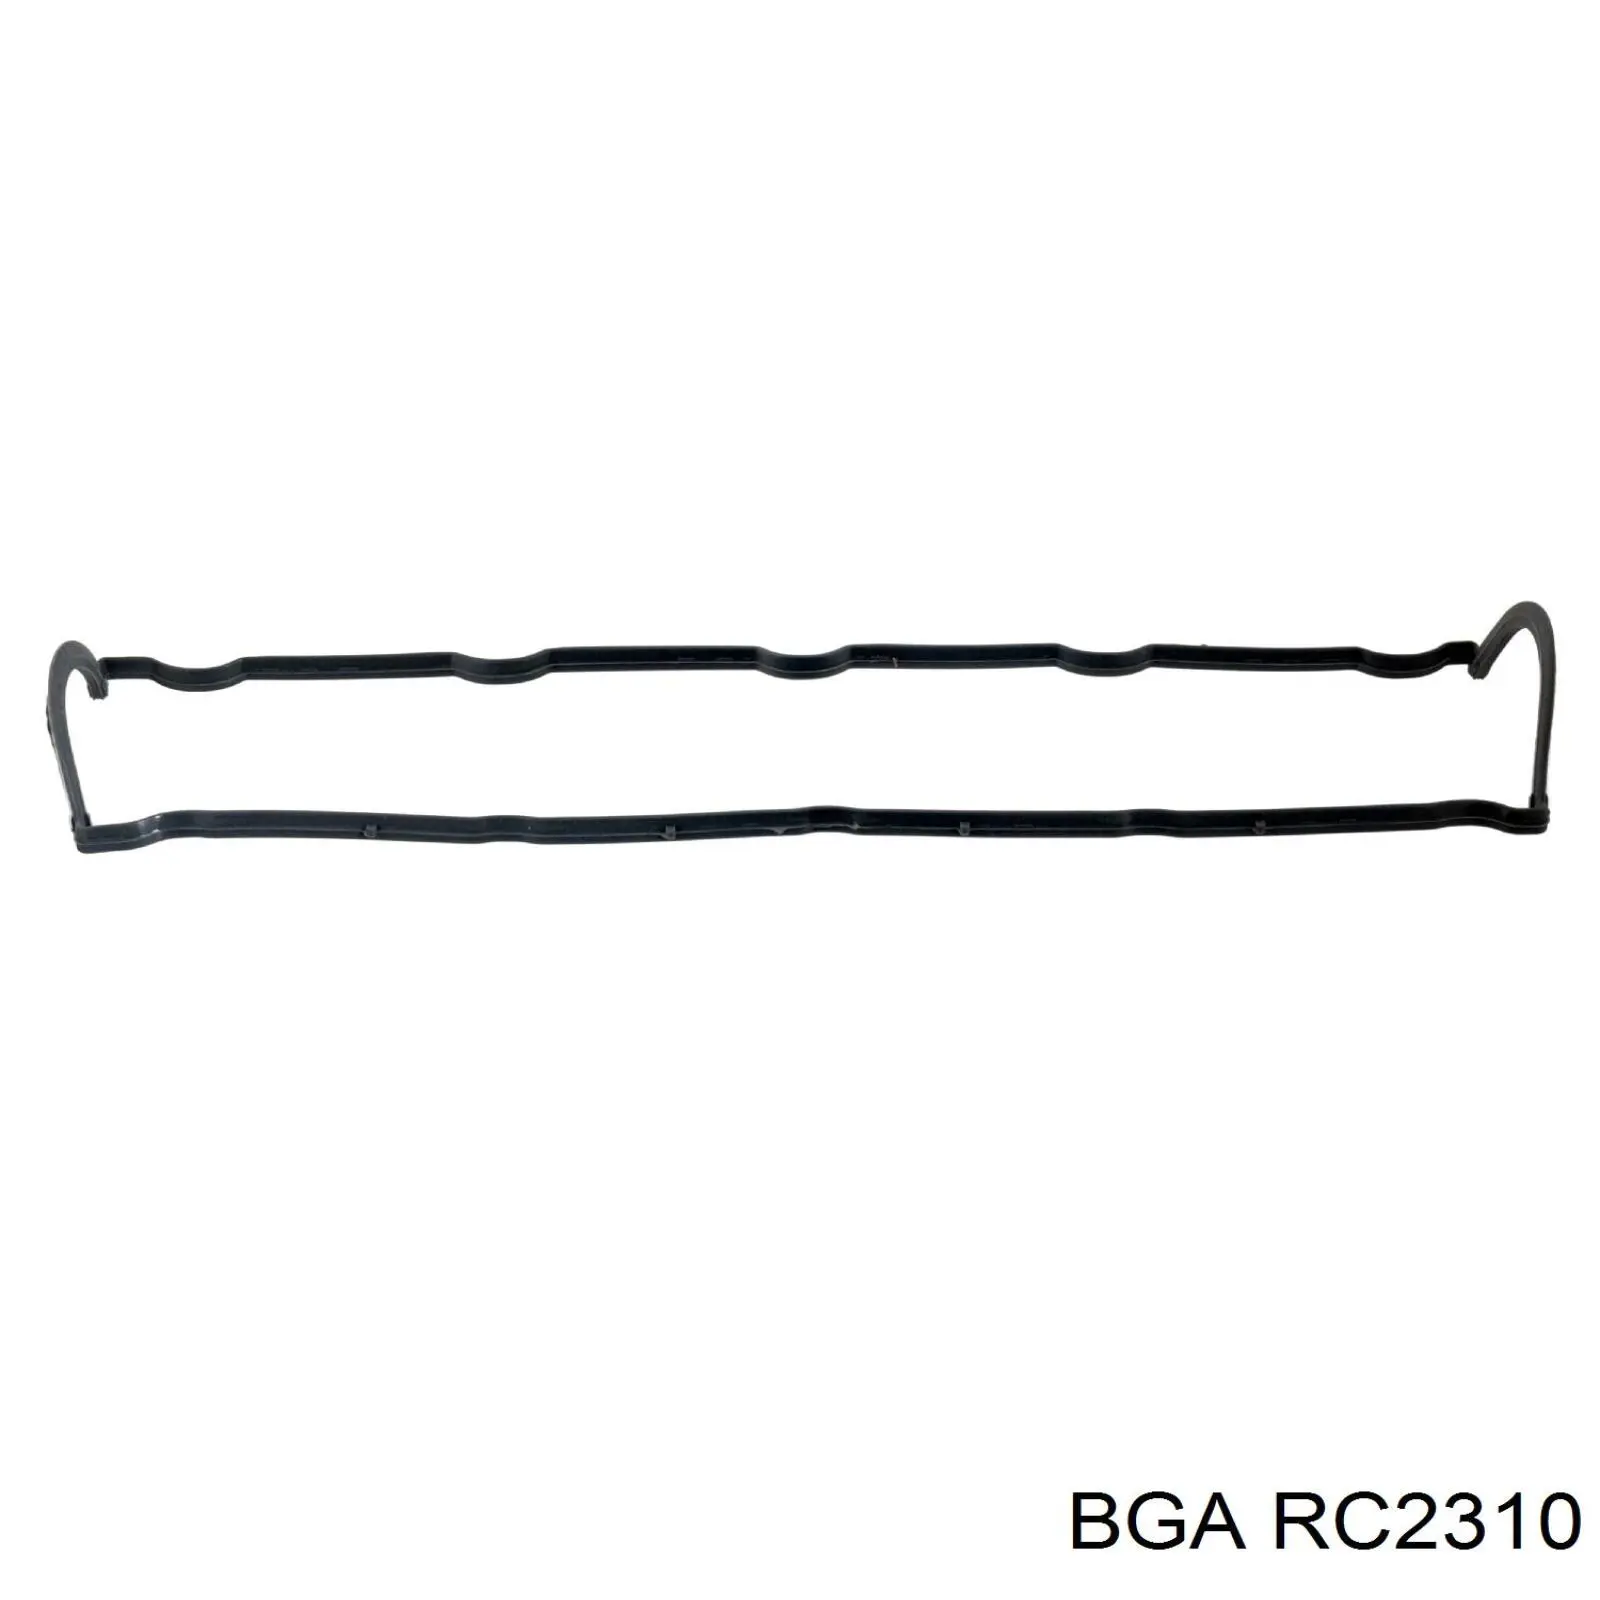 RC2310 BGA junta de la tapa de válvulas del motor